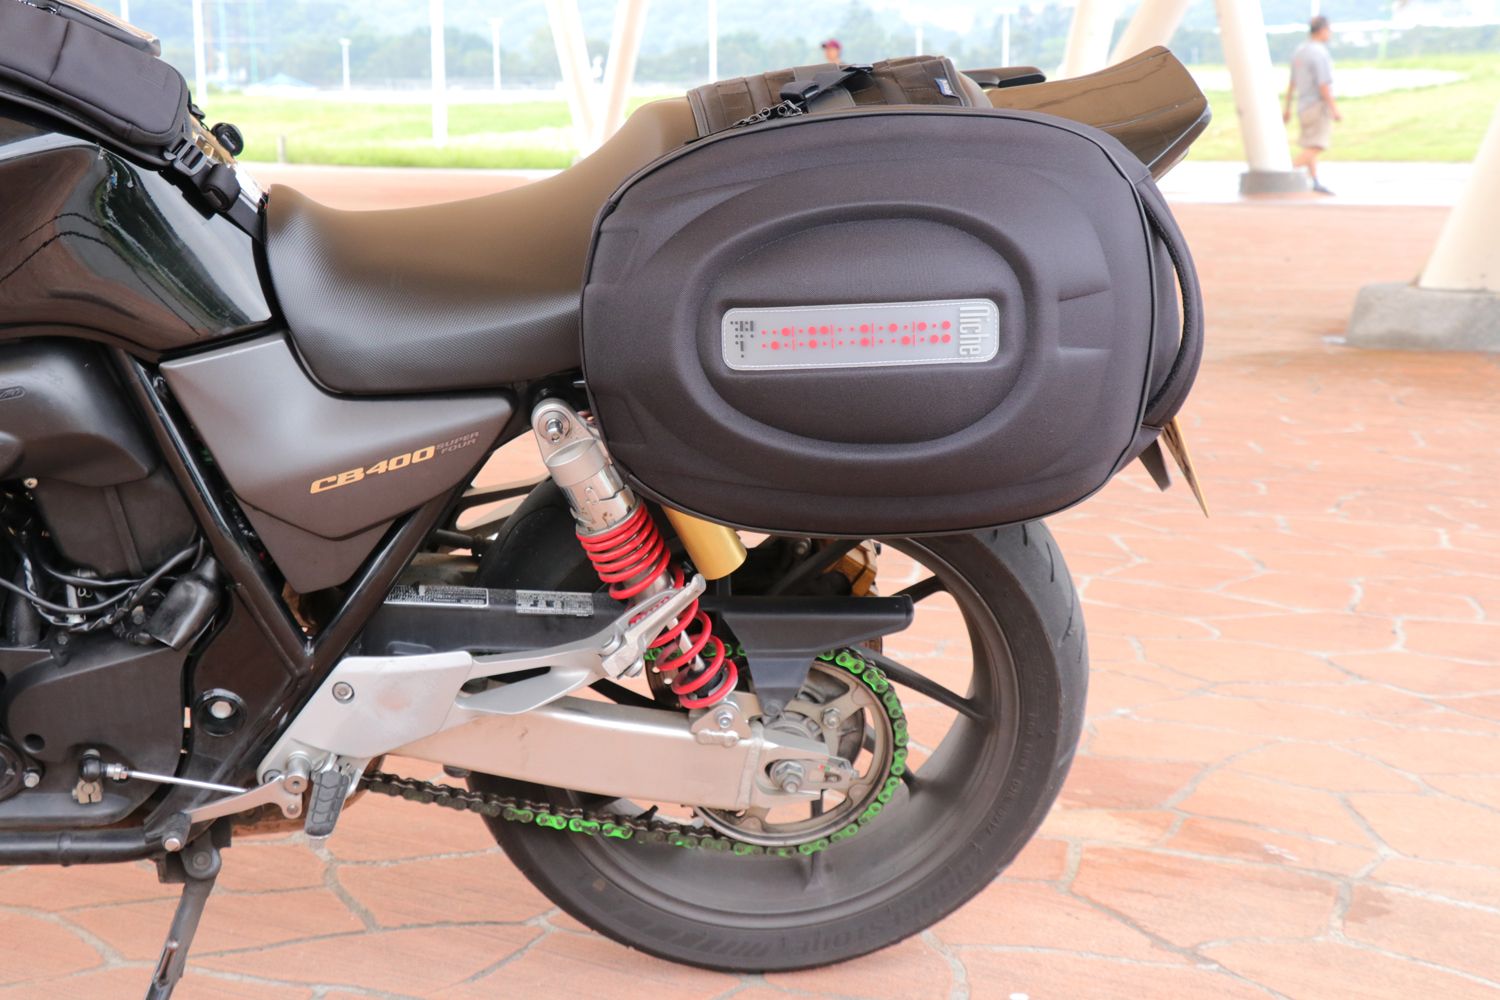 Niche har de fedeste, mest innovative motorcykel-tasker, bagage, rygsække til motorcyklister